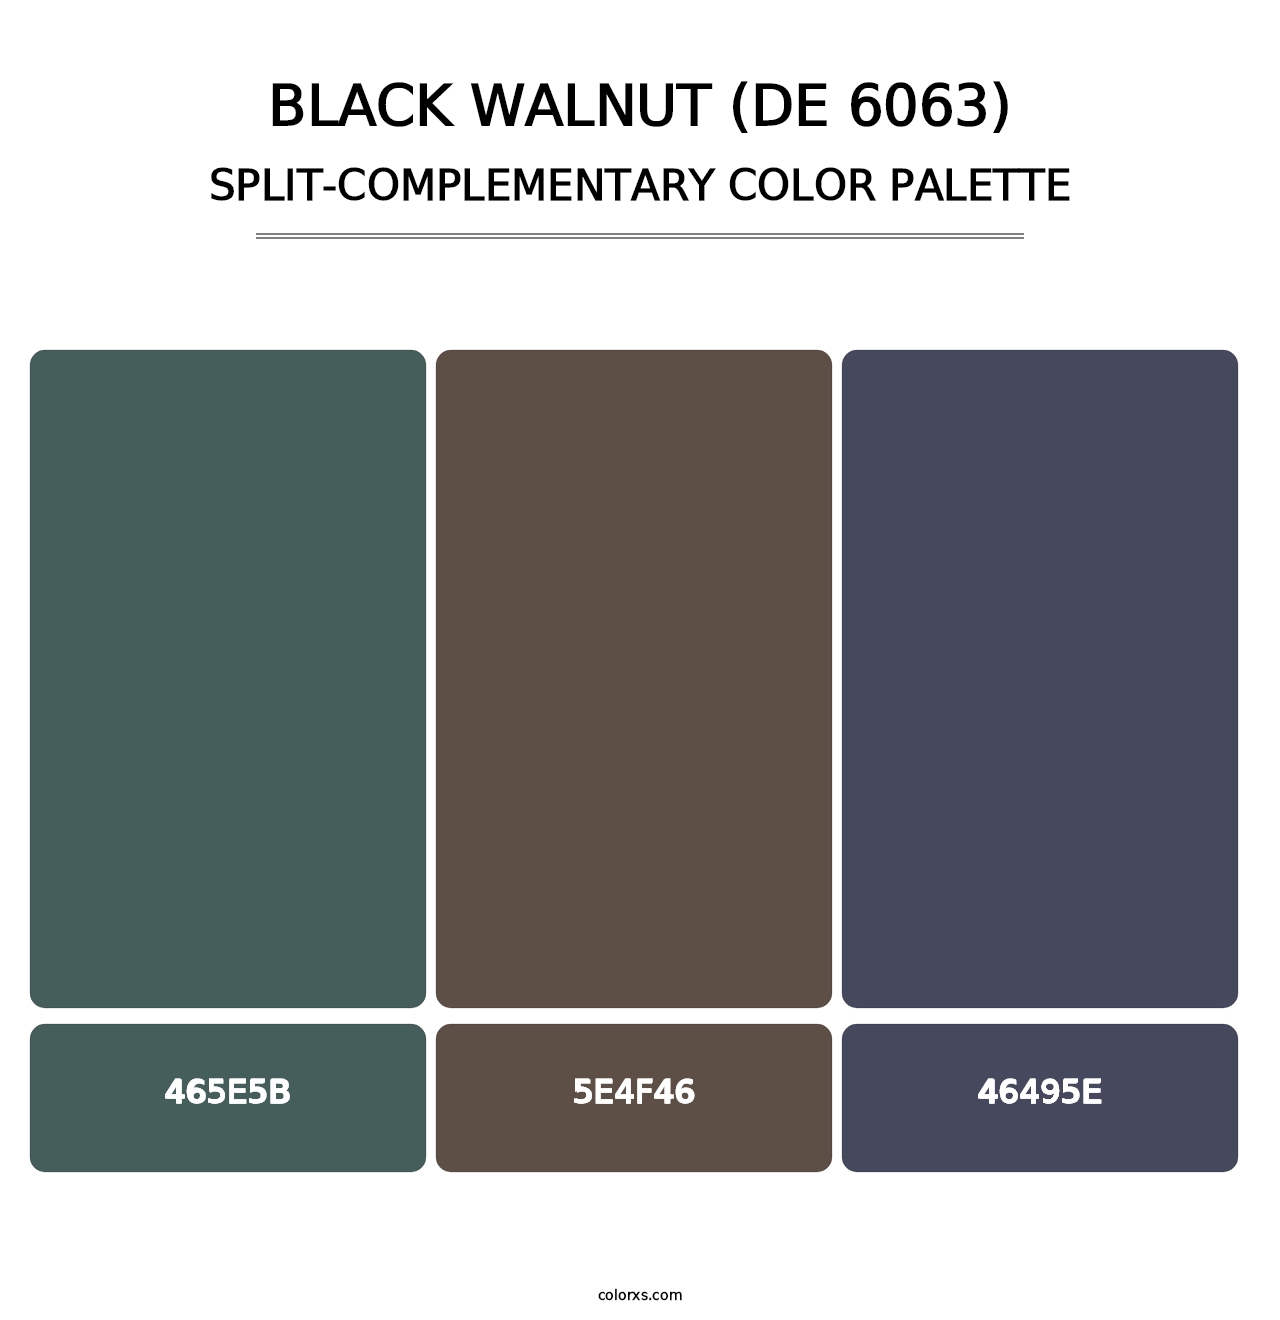 Black Walnut (DE 6063) - Split-Complementary Color Palette